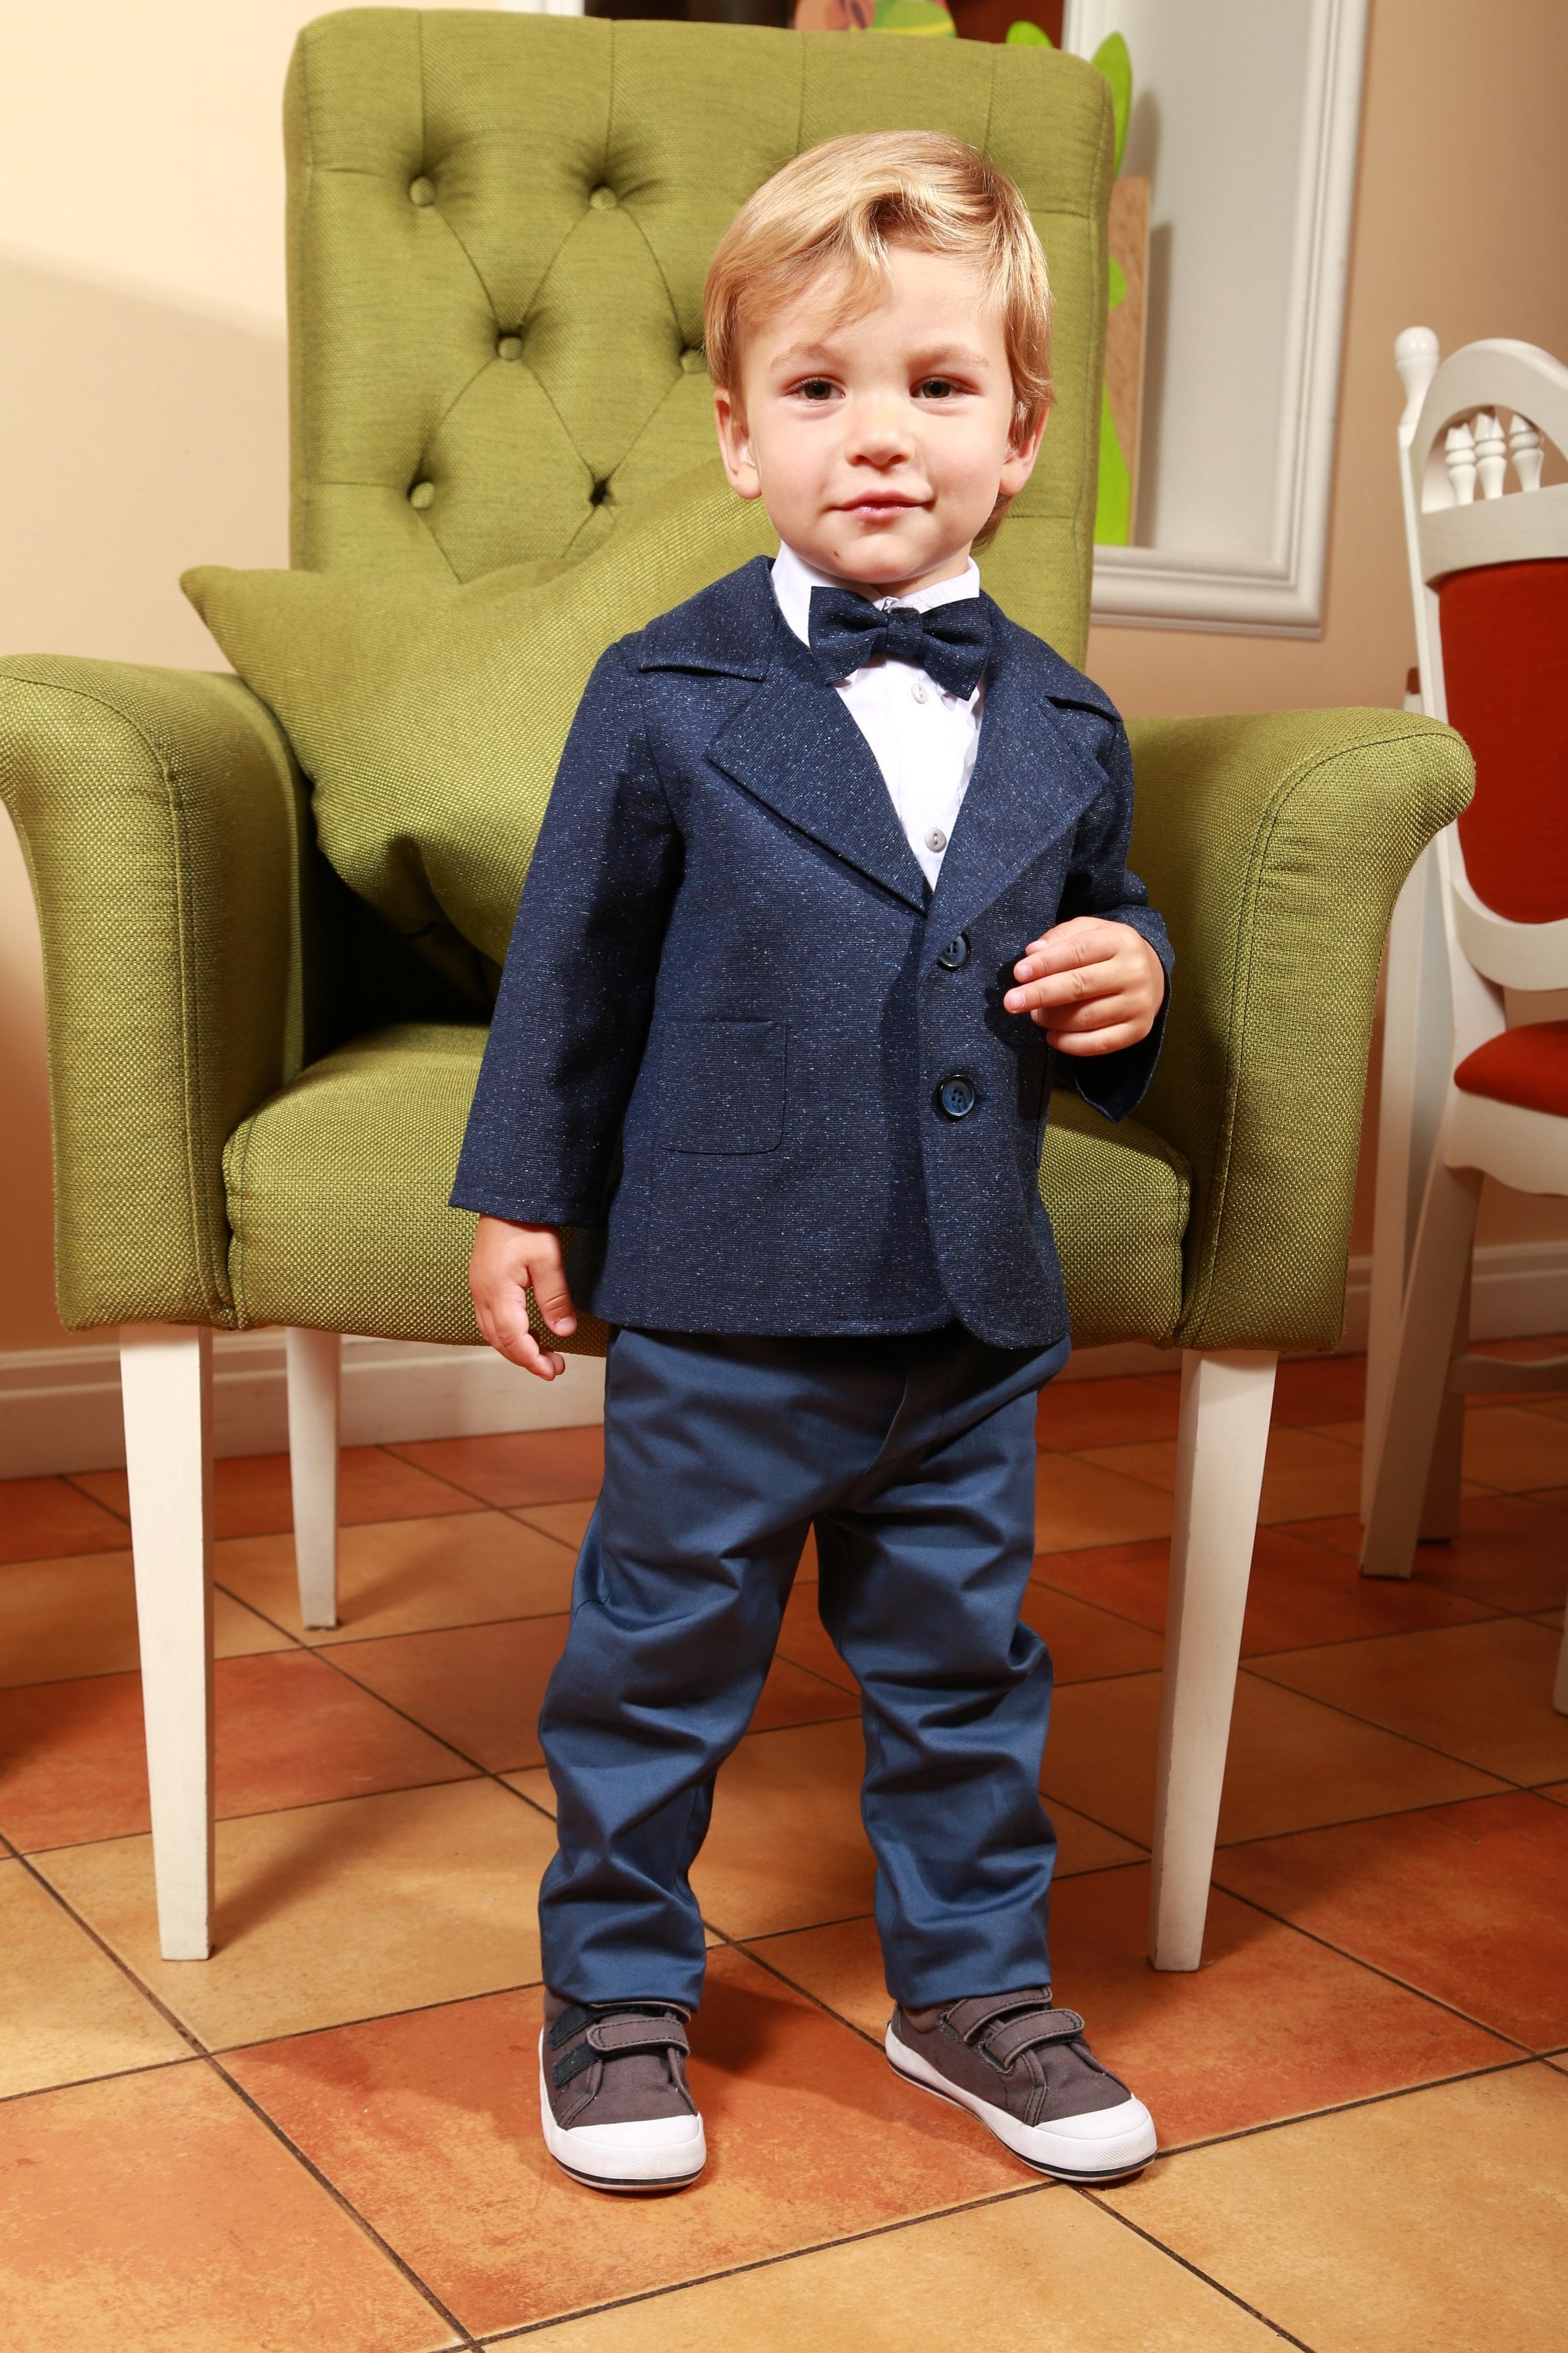 Купить костюм на мальчика на авито. Классический костюм для мальчика. Нарядный костюм для мальчика 2 года. Нарядная одежда для мальчиков 3 года. Элегантный костюм для малыша.